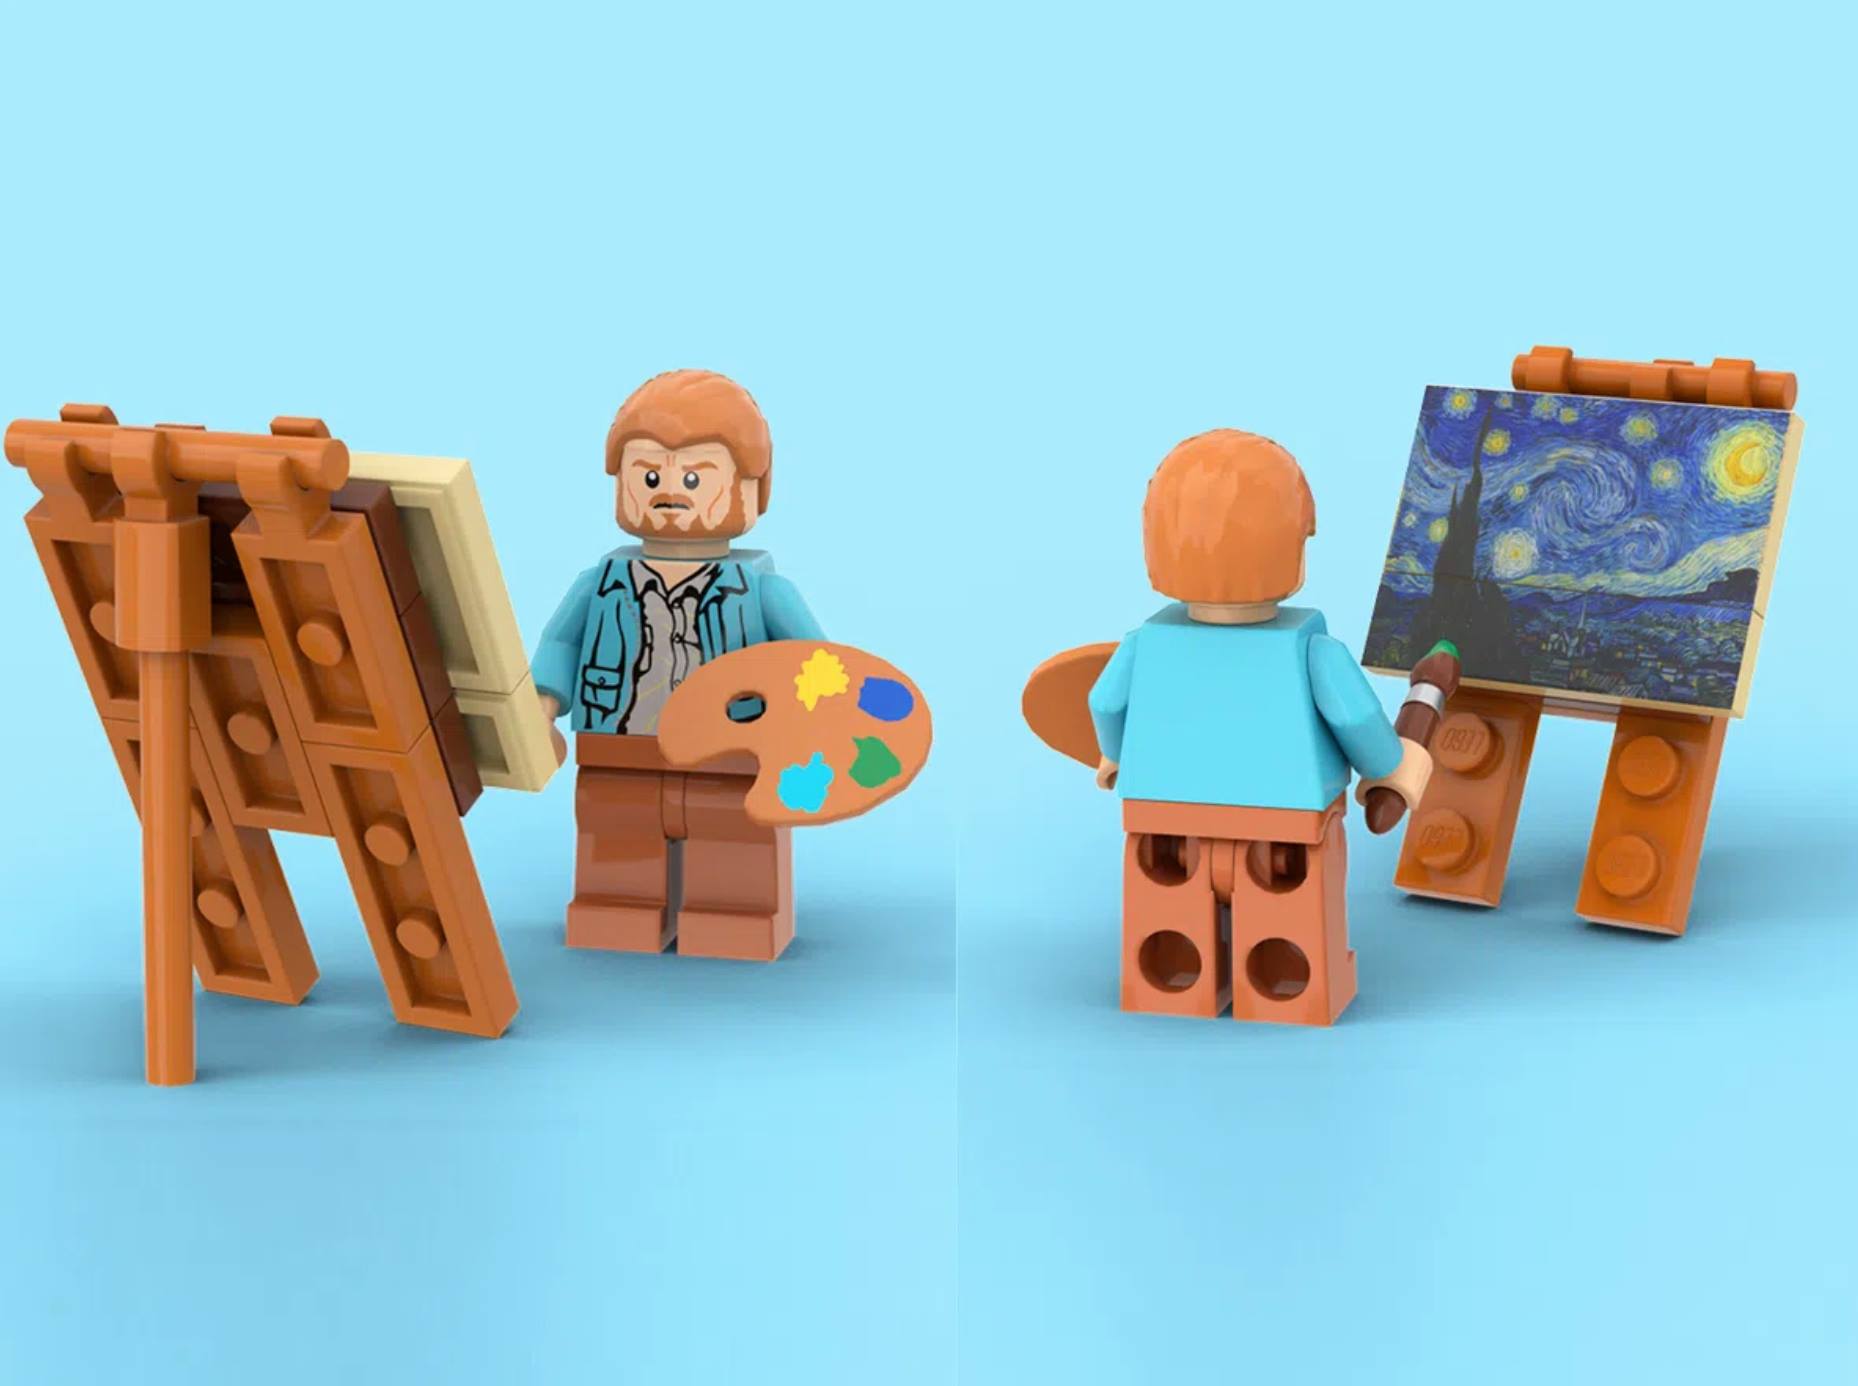 Noite Estrelada, de Van Gogh, ganha versão Lego